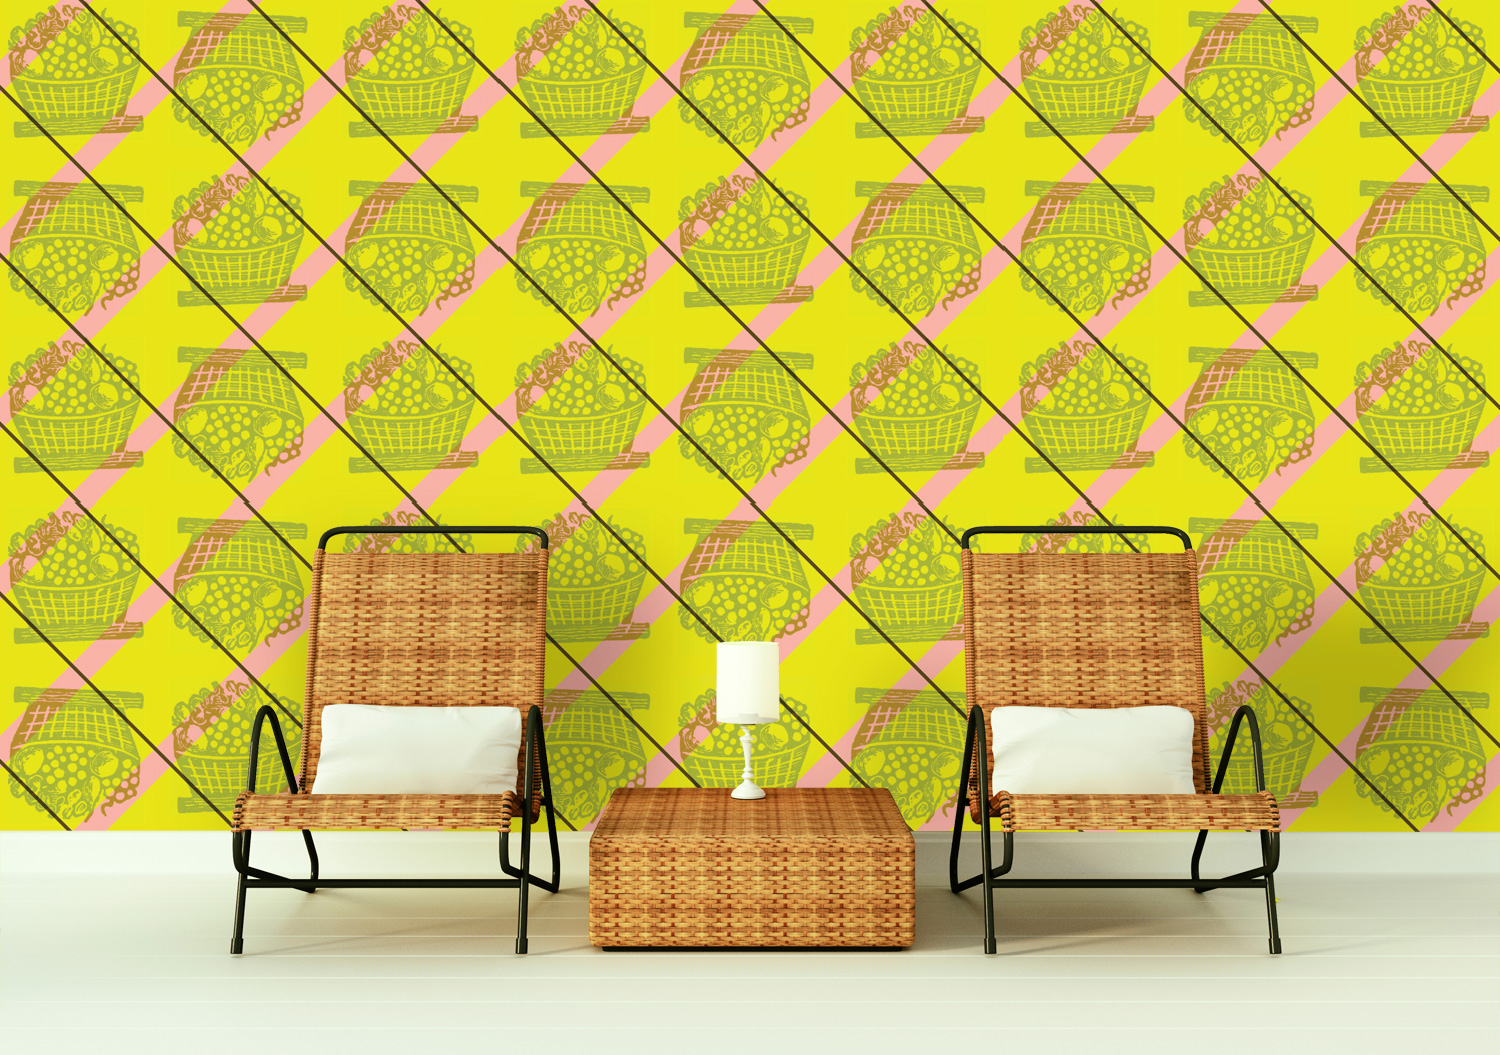 Wicker-Chairs-TUTTI-saffron.jpg